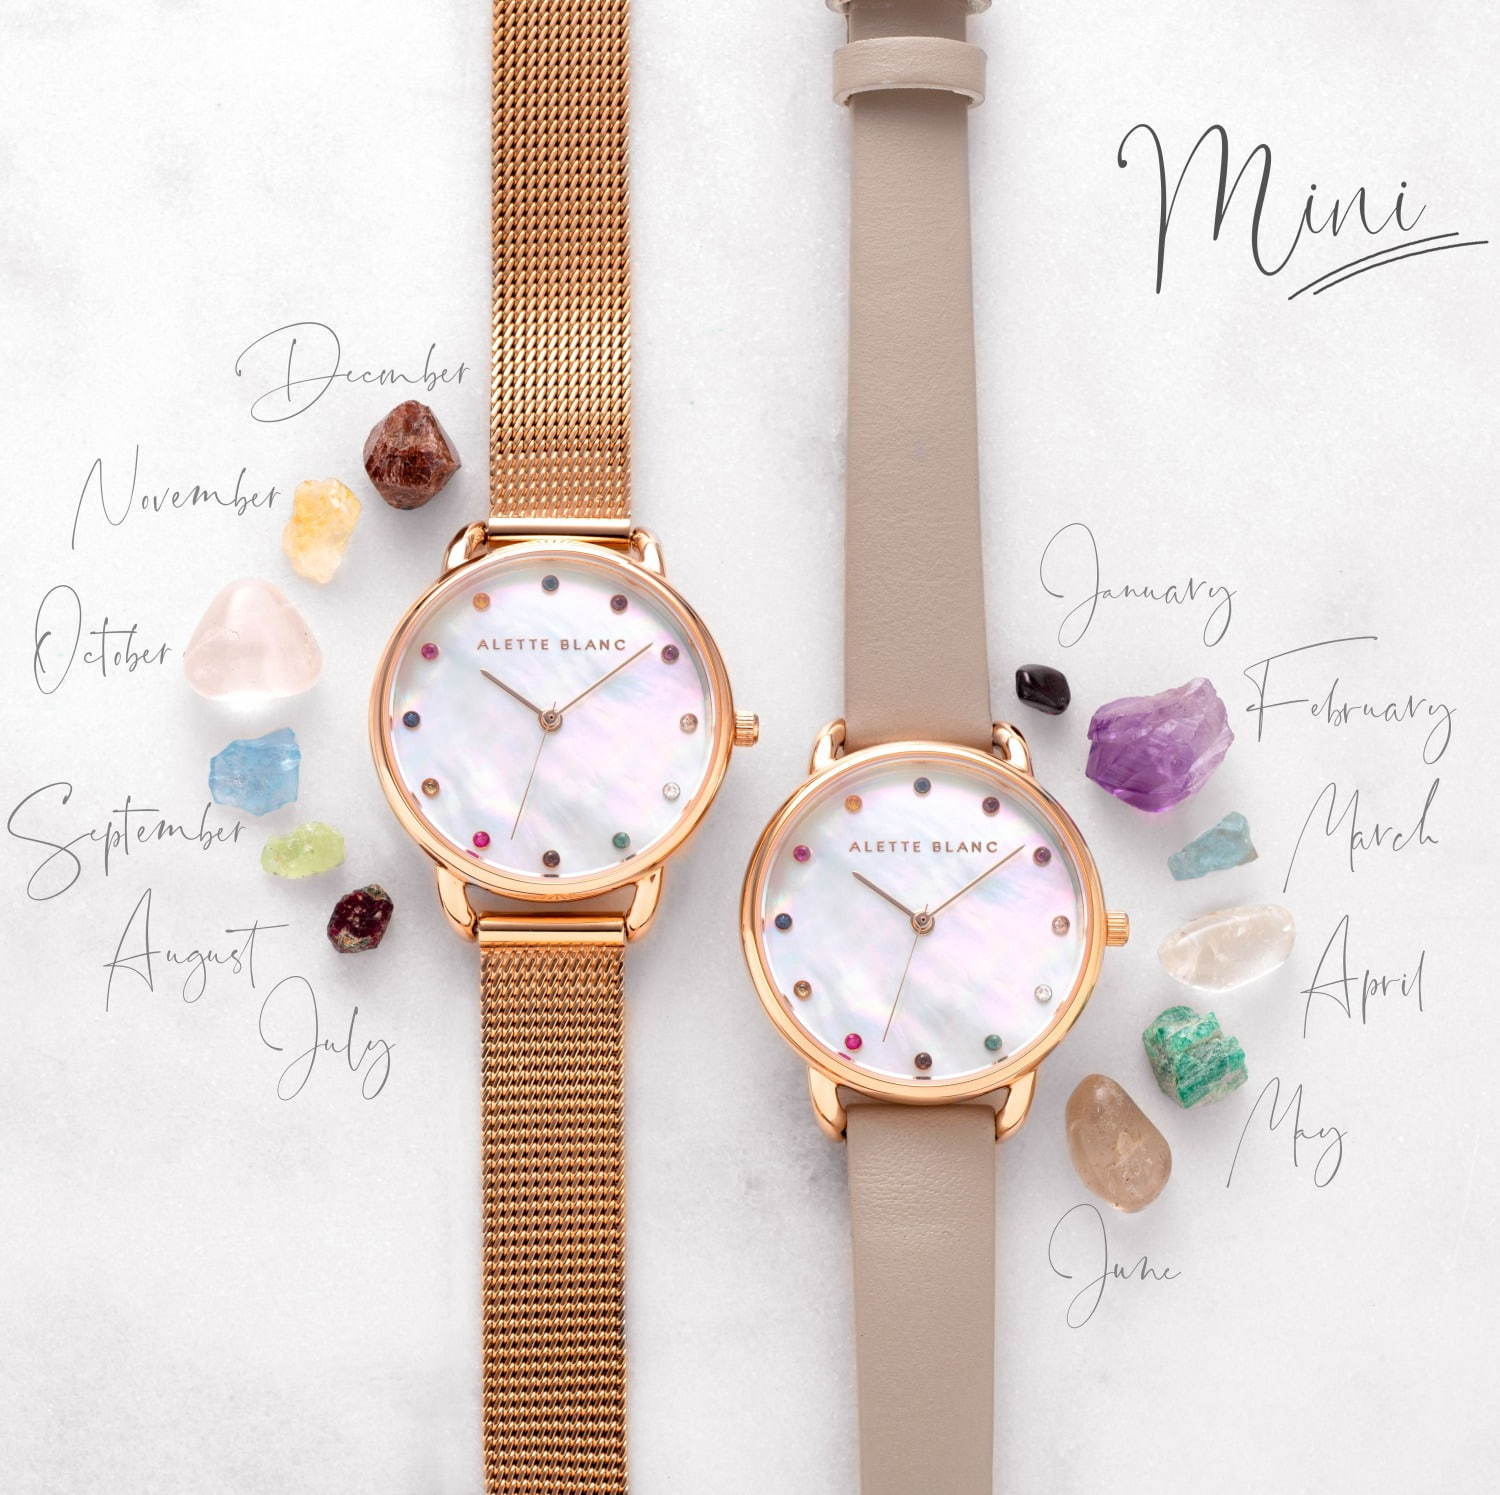 アレットブラン“誕生石”を飾った腕時計「バースストーン」がミニサイズ 